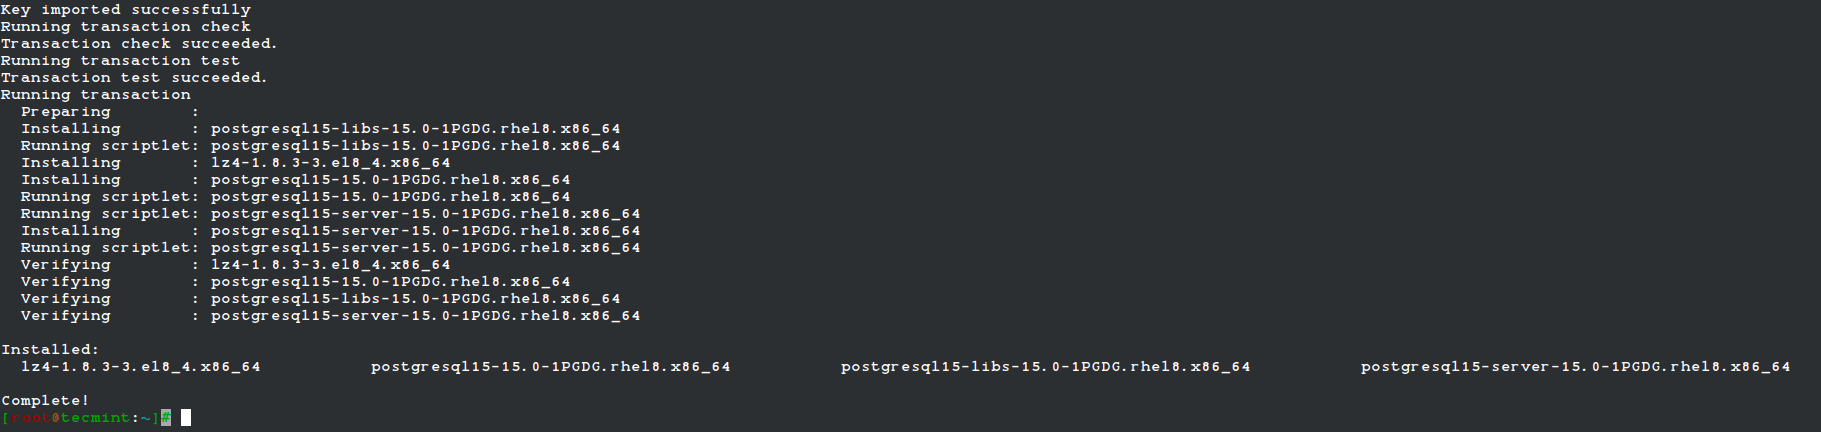 PostgreSQL 15 Installation Completed